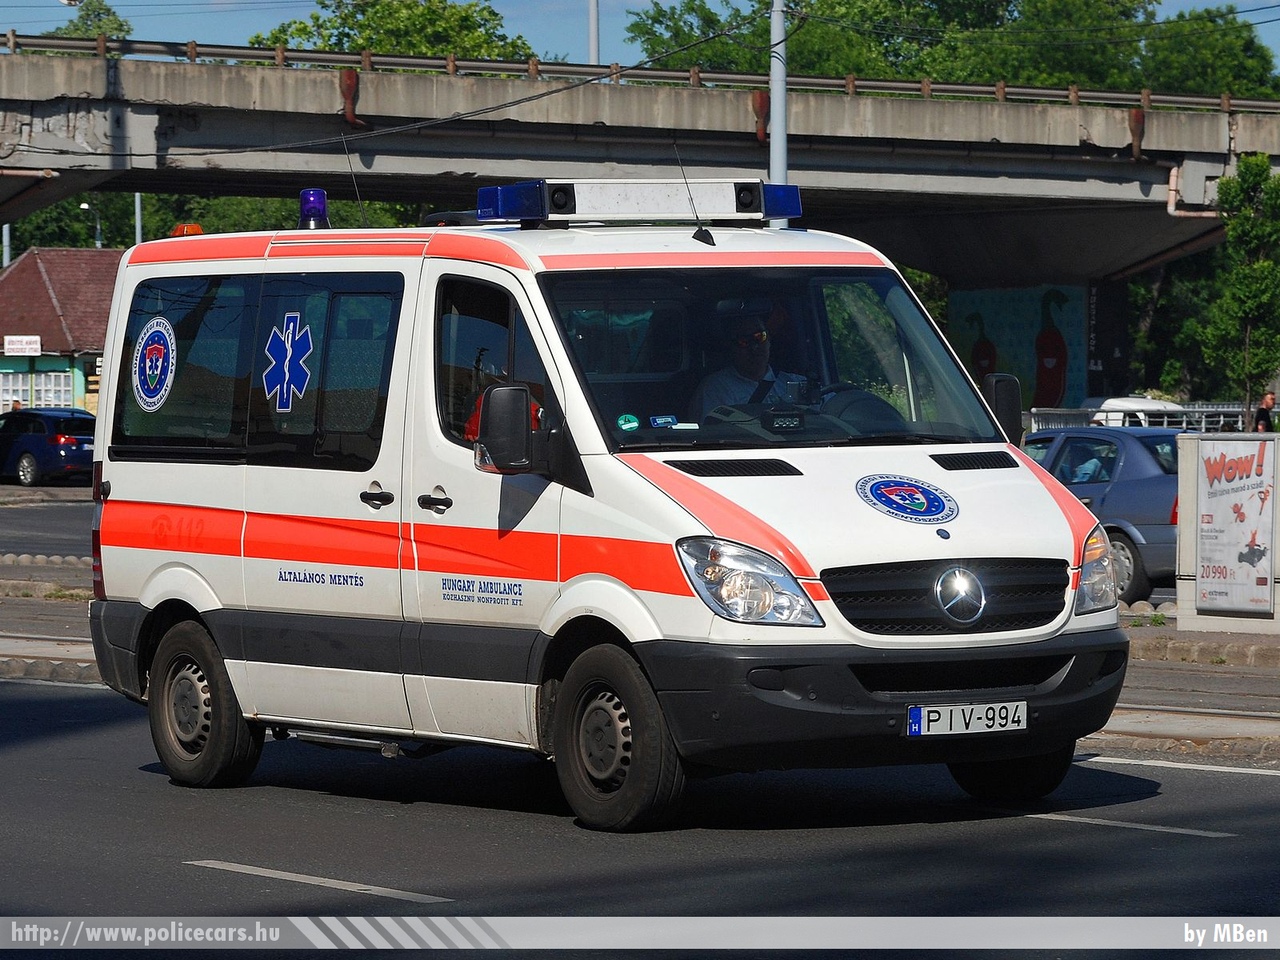 Mercedes Sprinter II, Hungary Ambulance Közhasznú Nonprofit Kft., fotó: MBen
Keywords: mentő mentőautó magyar Magyarország hungarian Hungary ambulance PIV-994